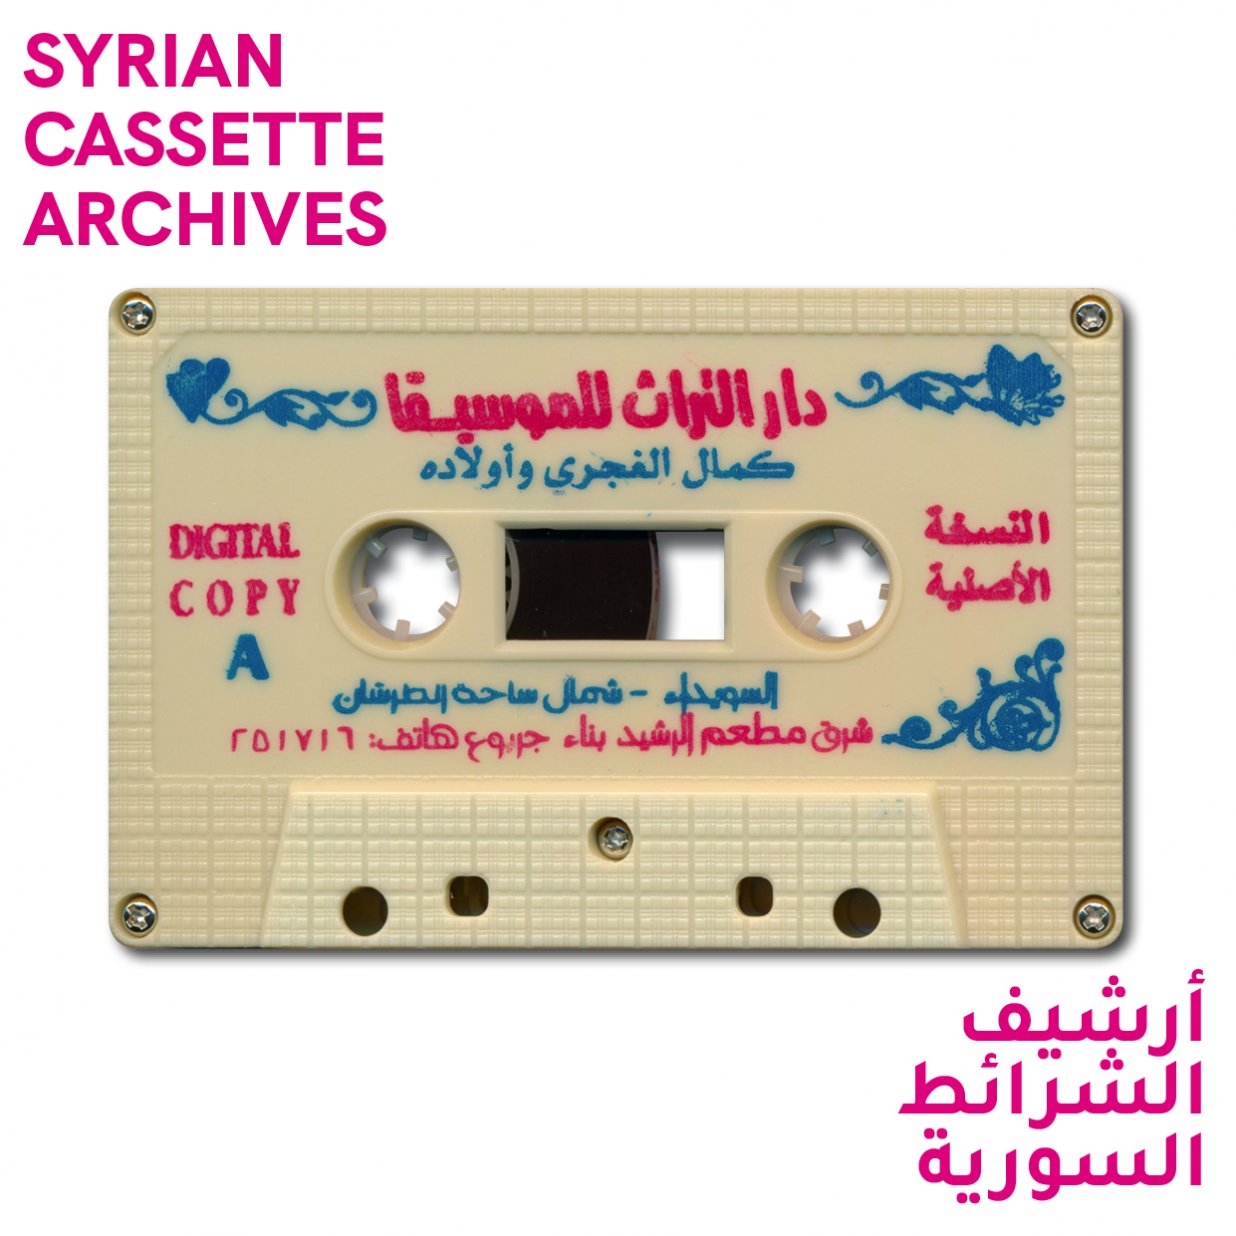 Das Bild zeigt eine Kassettenseite, als ein Beispiel aus der Sammlung &bdquo;Syrian Cassette Archives&ldquo; (Syrische Kassettenarchive). | © Mark Gergis